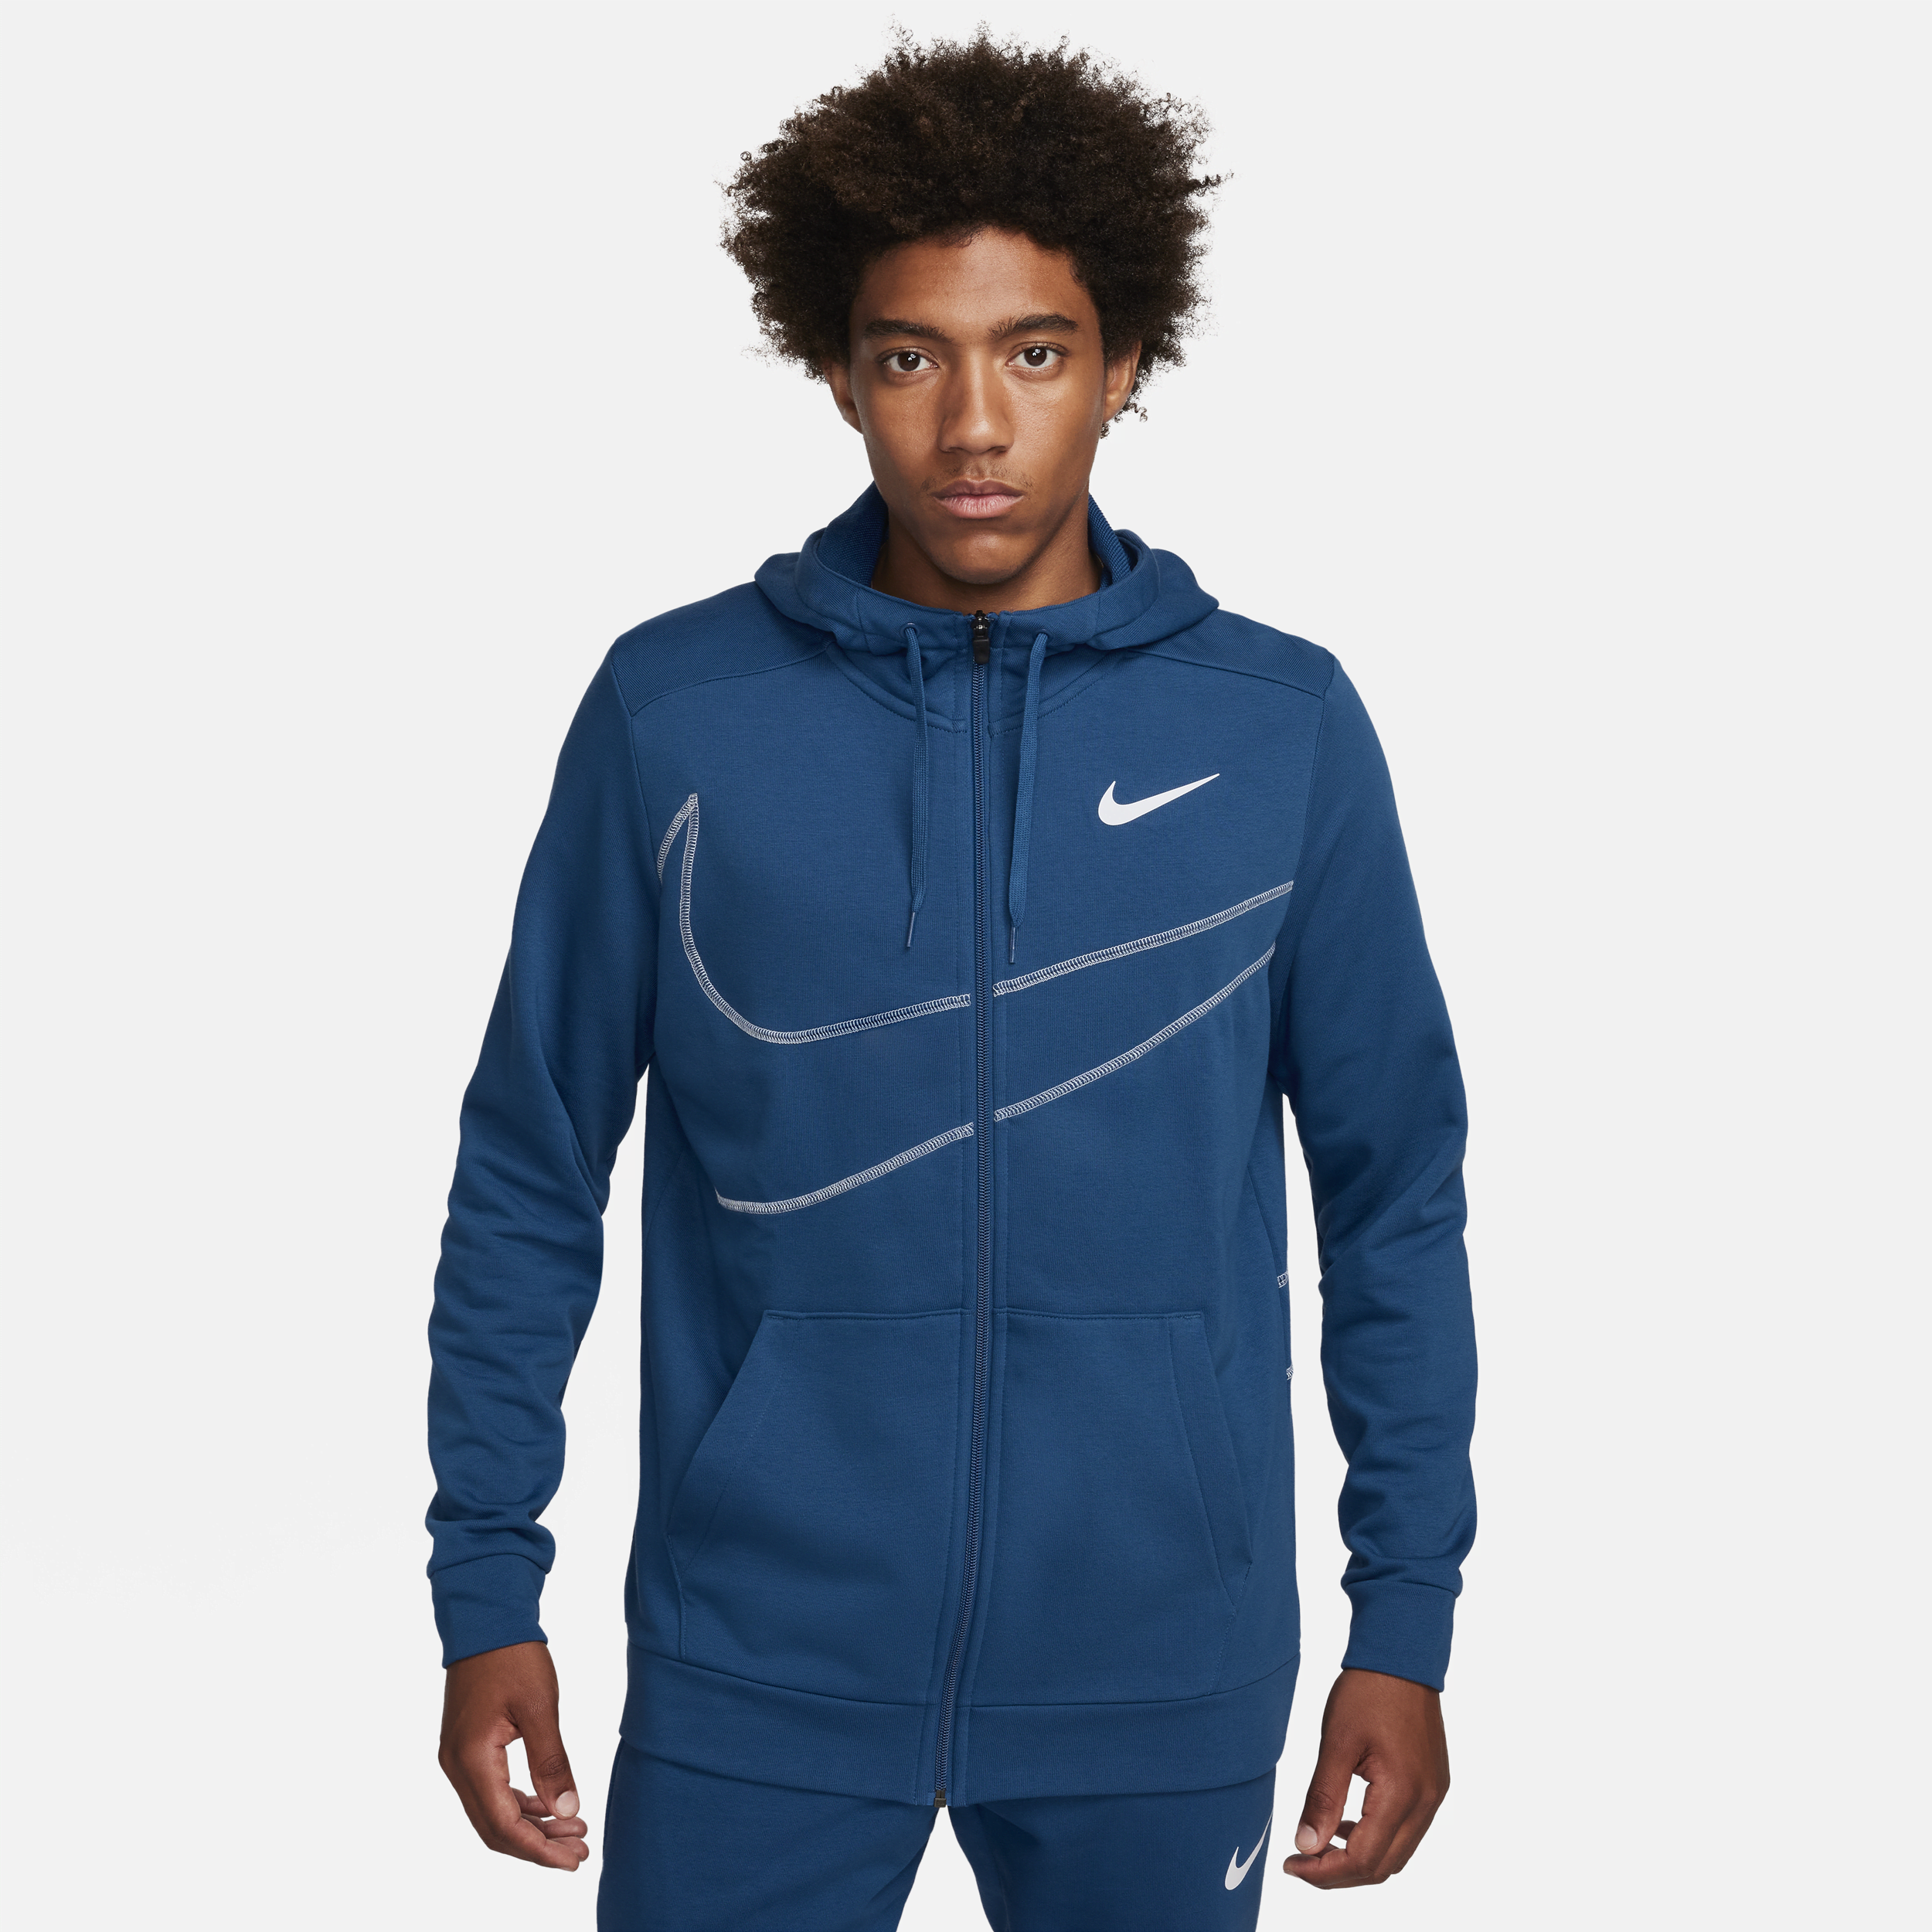 Nike Dri-FIT fitnesshoodie van fleece met rits over de hele lengte voor heren - Blauw